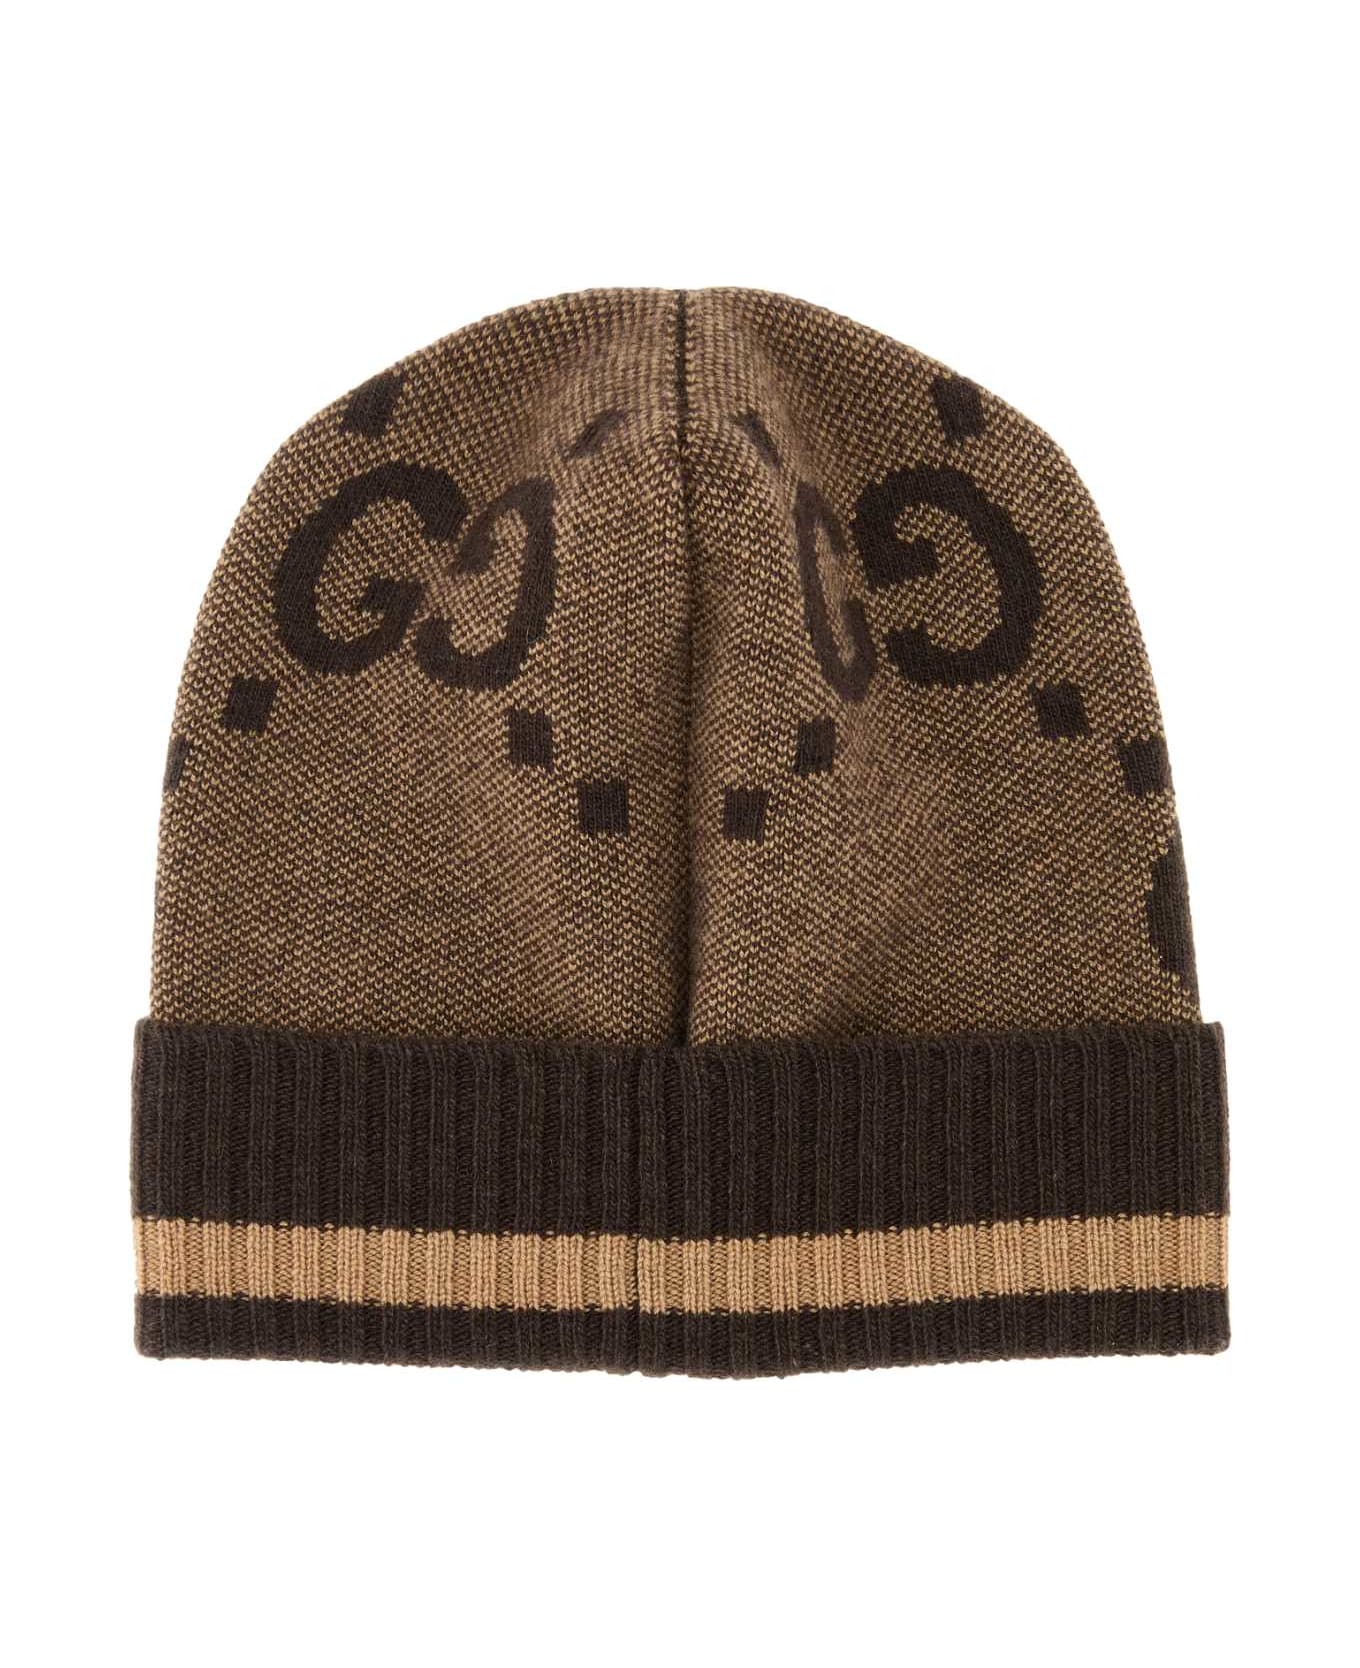 Gucci Embroidered Cashmere Beanie Hat - BEIGEDARKBROWN